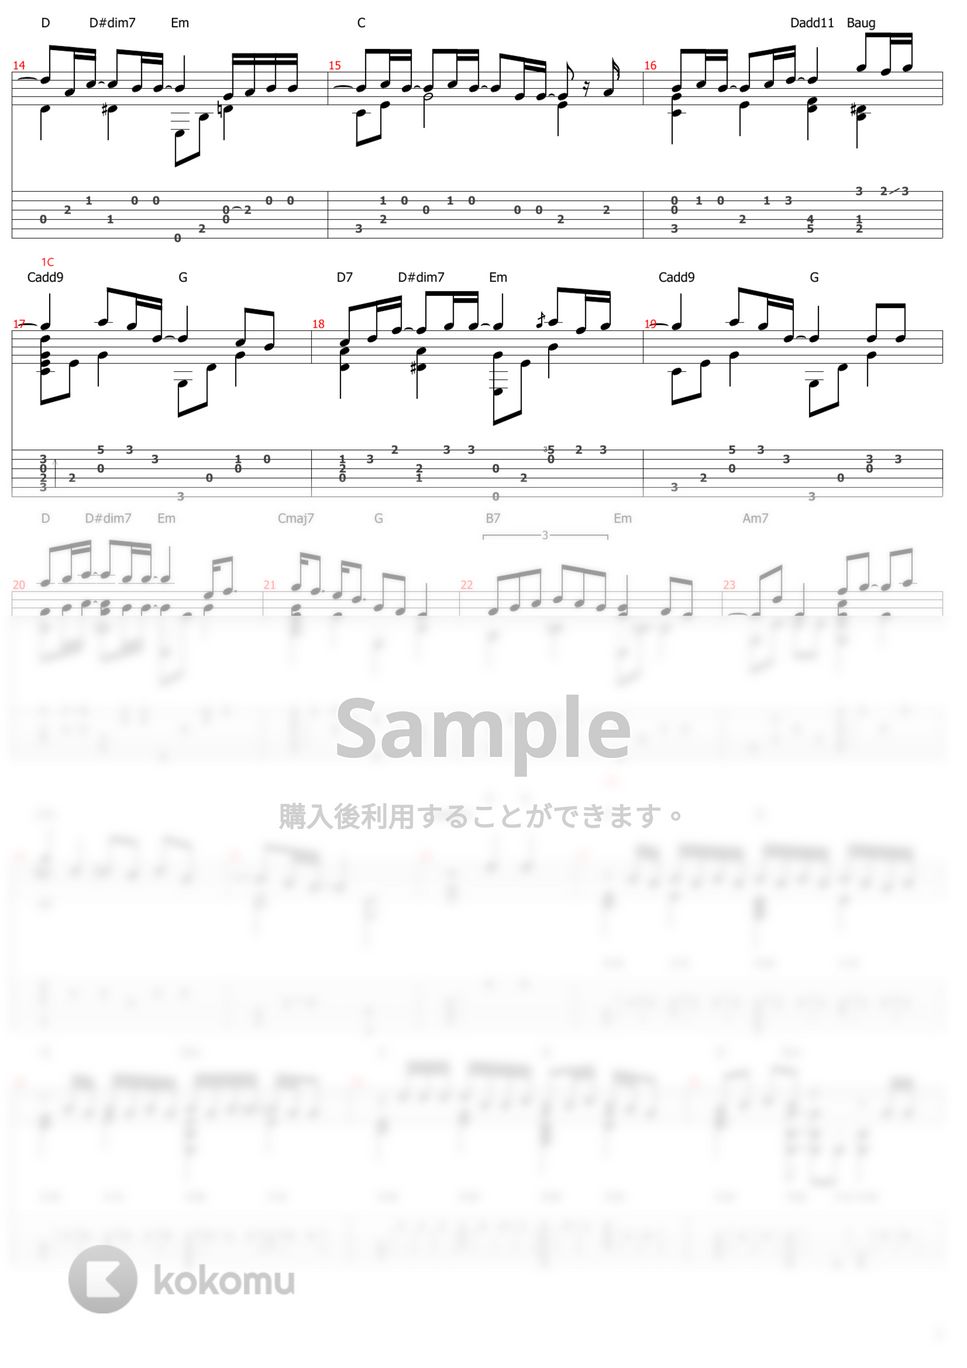 優里 - ドライフラワー (ソロギター) by おさむらいさん